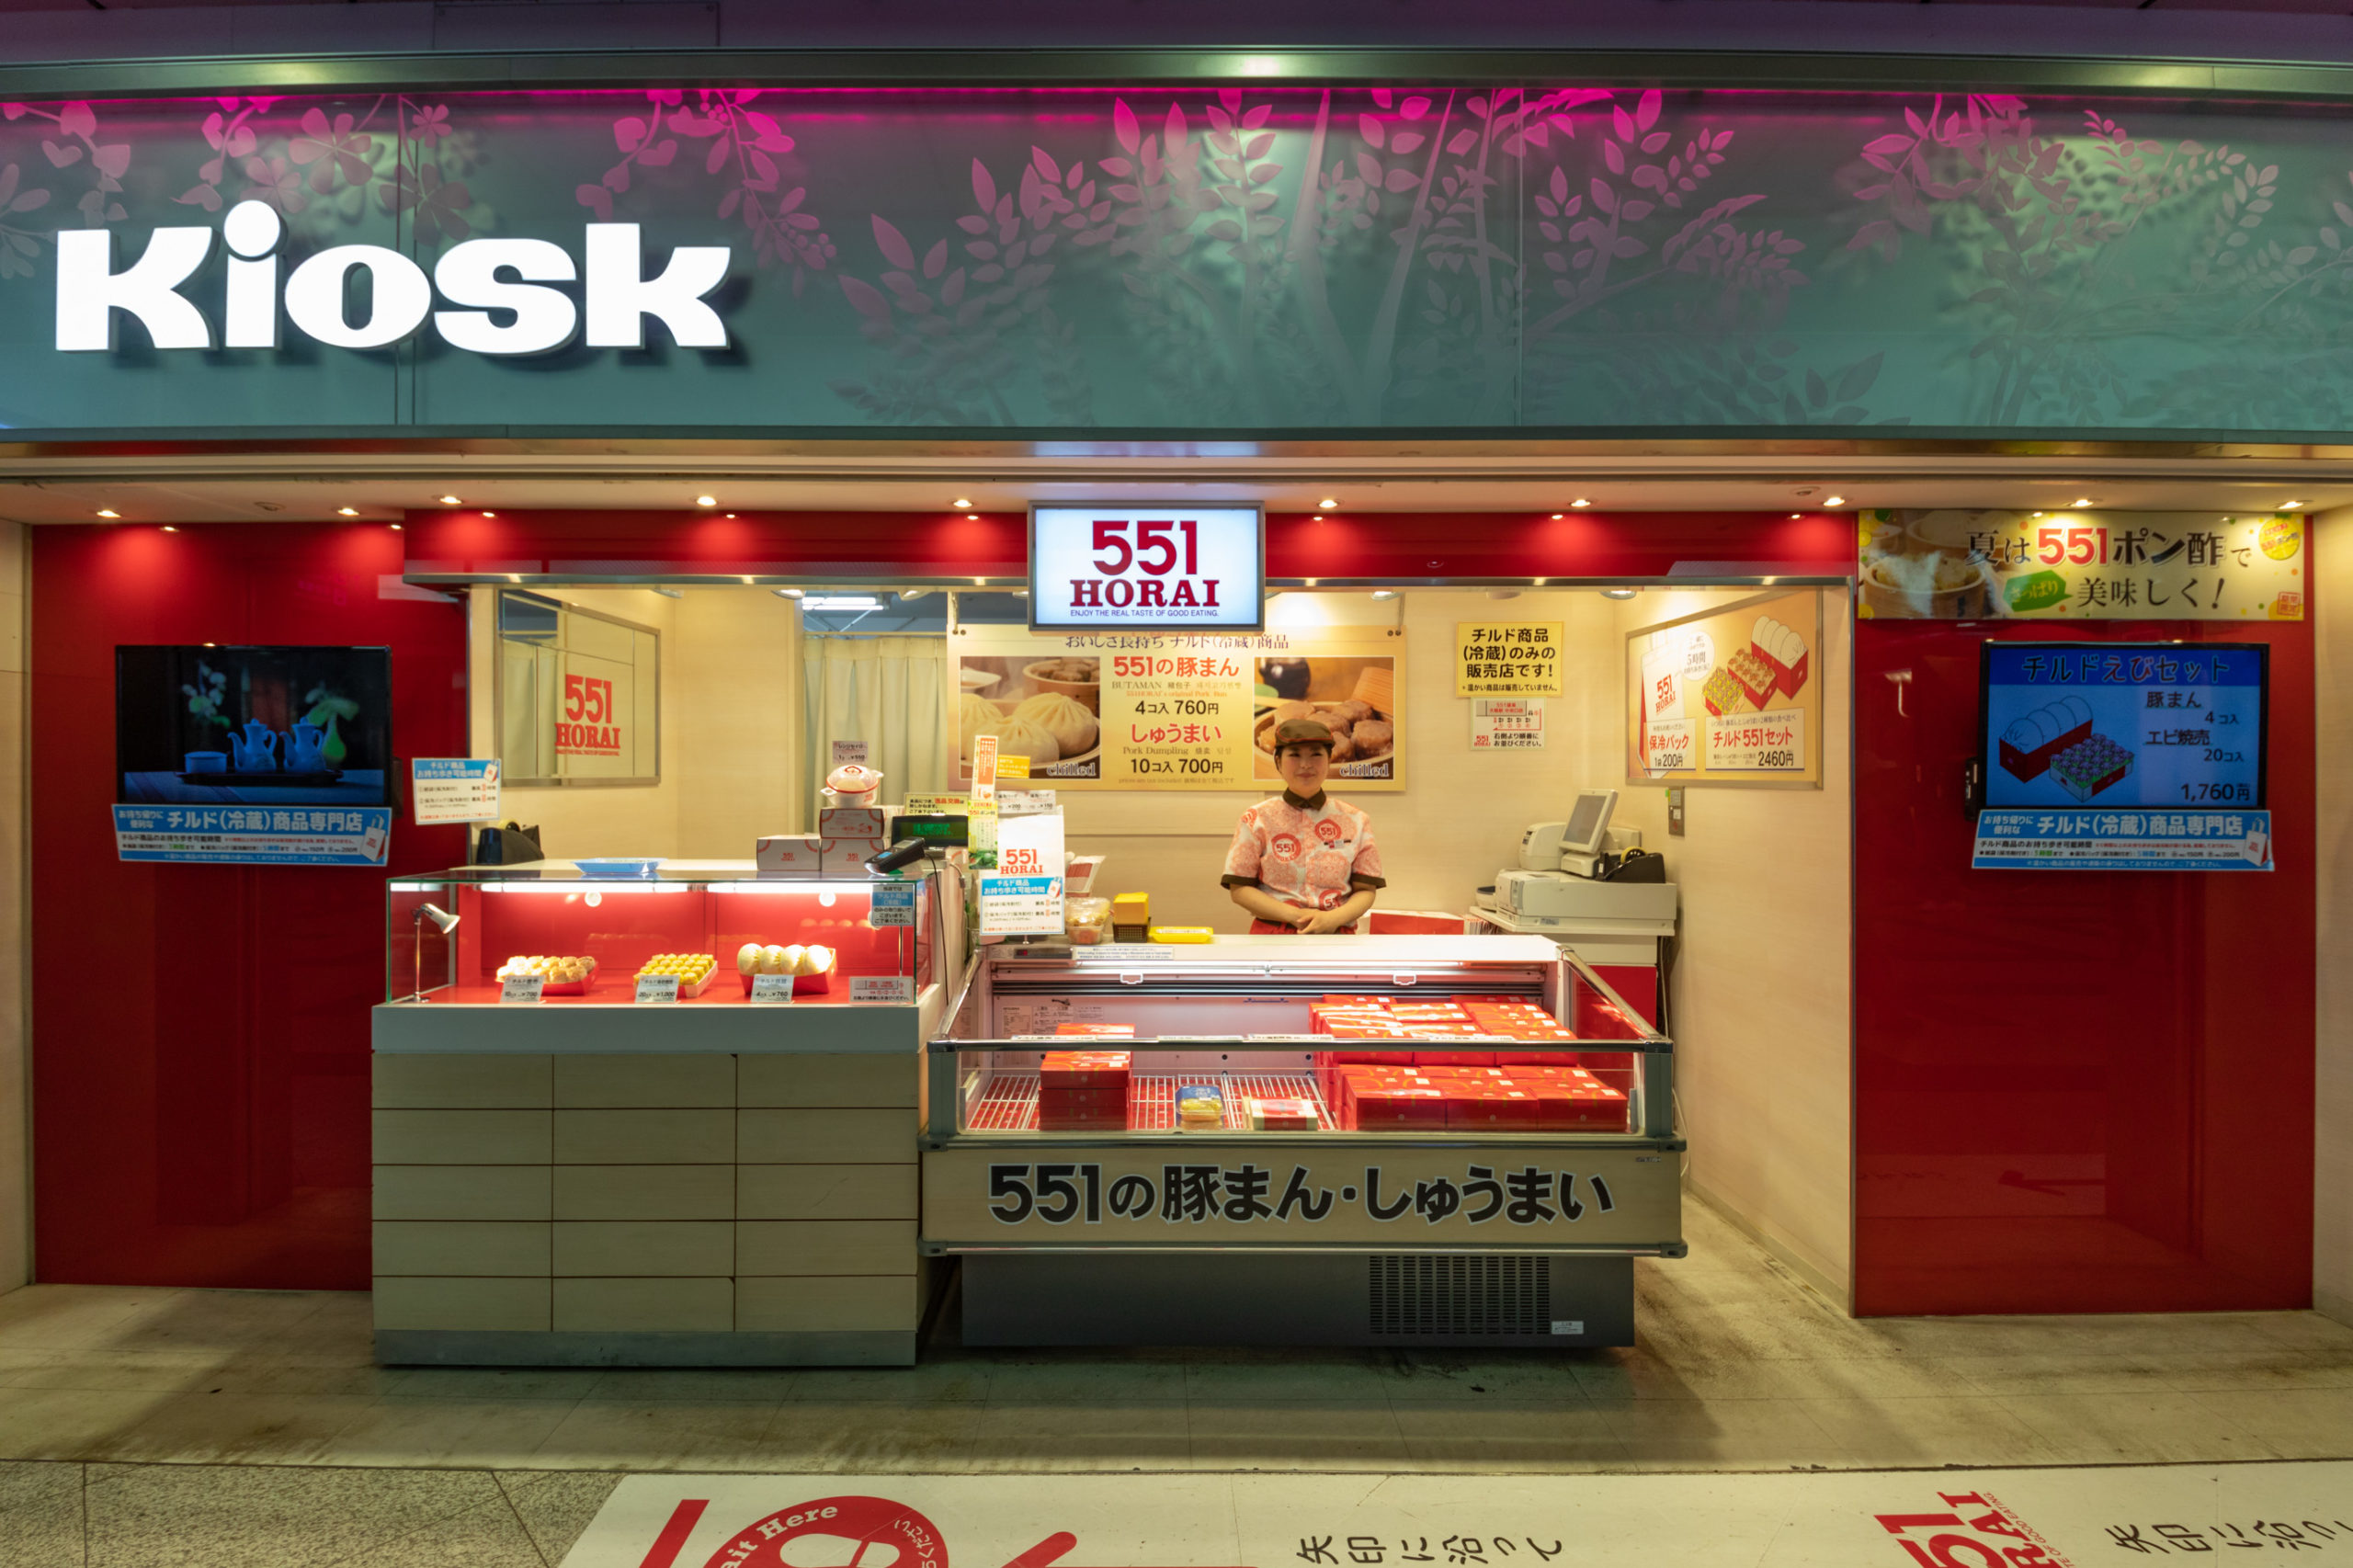 Jr大阪駅中央口店 お店を探す 551horai 蓬莱 大阪名物の豚まん 肉まん